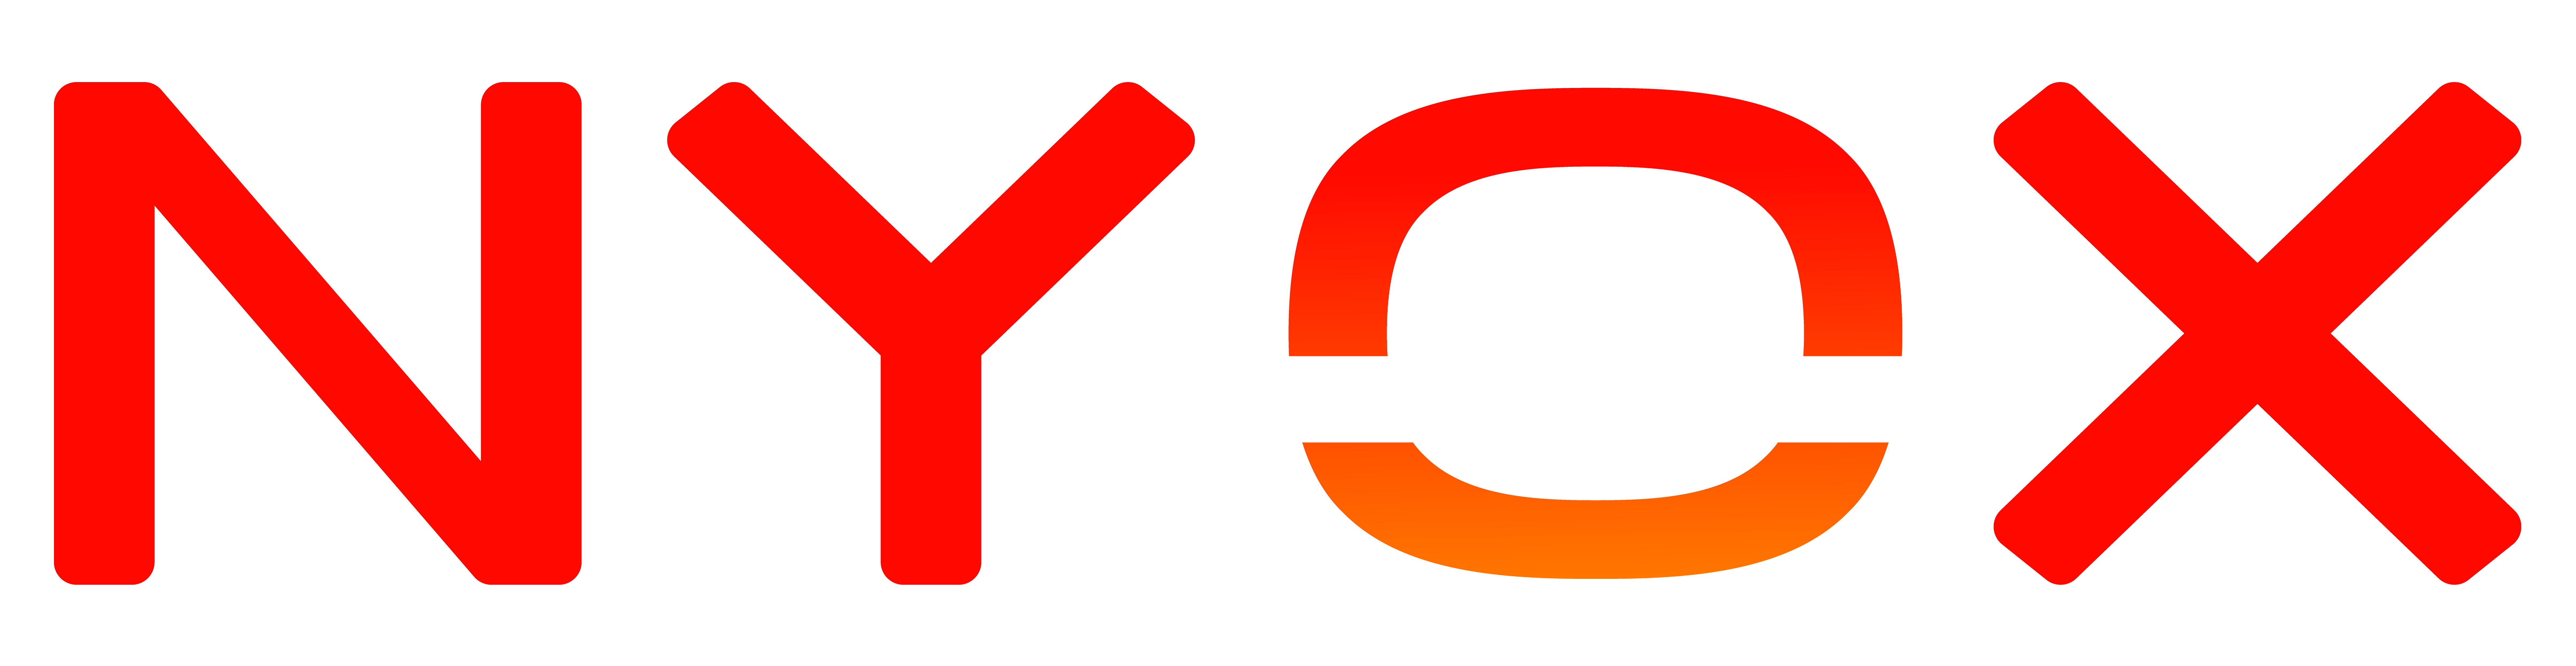 NYOX-Agency-Logo